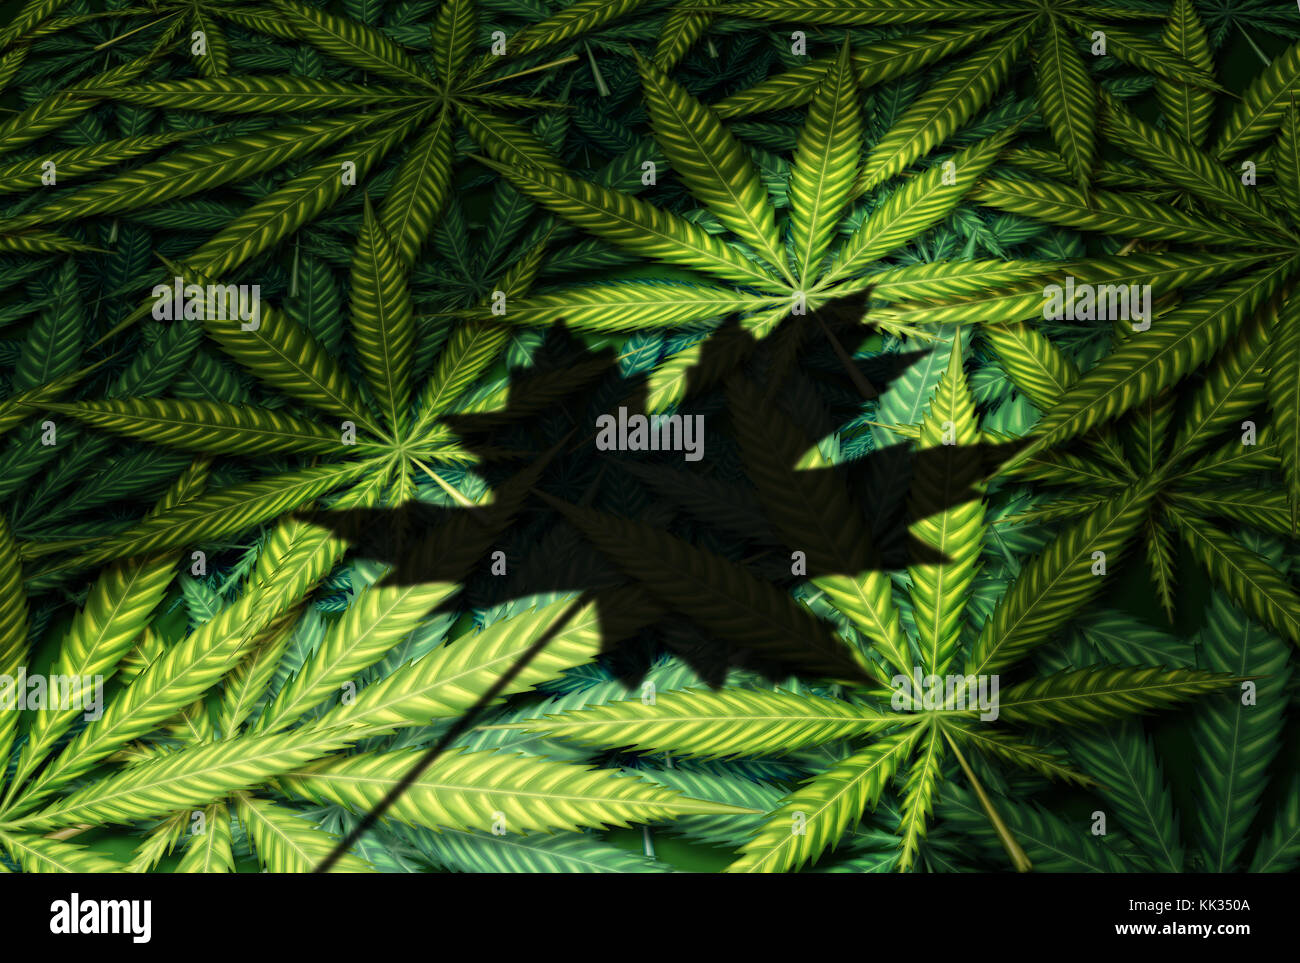 La cannabis in Canada la legge canadese e legalizzazione della marijuana regolamenti come un gruppo di foglie con un ombra di una foglia di acero come un ricreative. Foto Stock